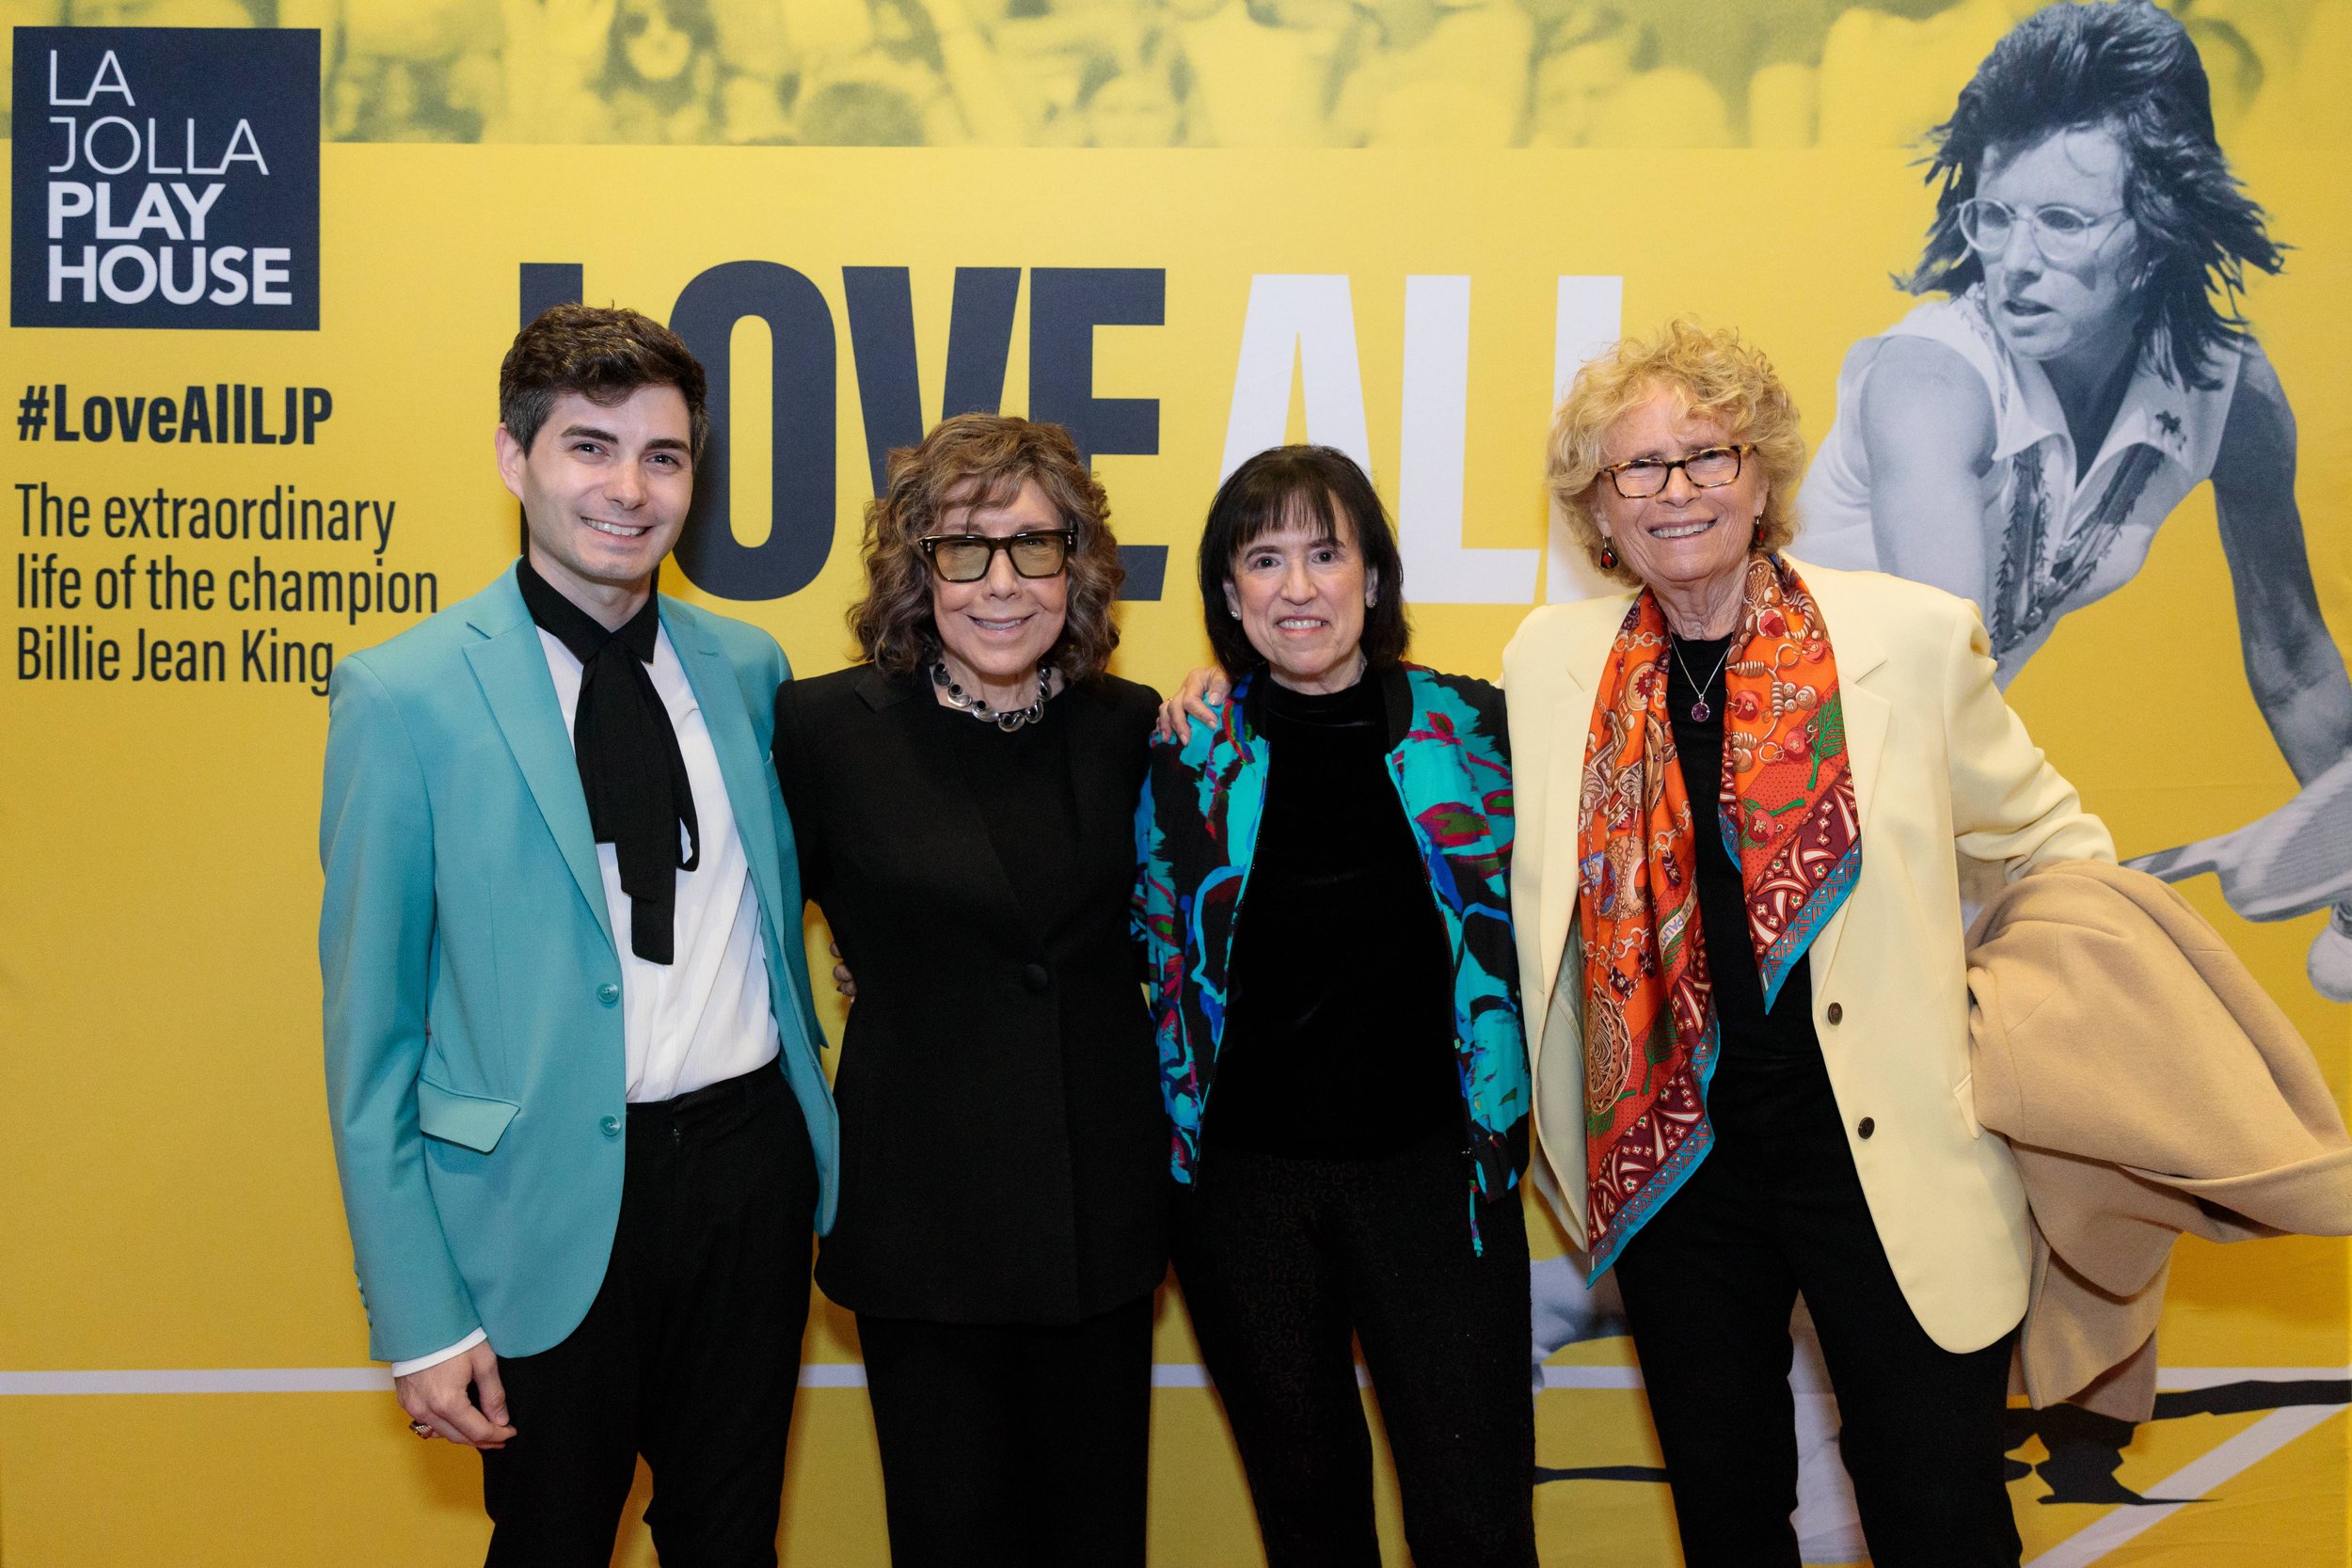 Trey Tetreault, Lily Tomlin, Harriet Leve, &amp; Brenda Feigen at opening night of LOVE ALL at La Jolla Playhouse